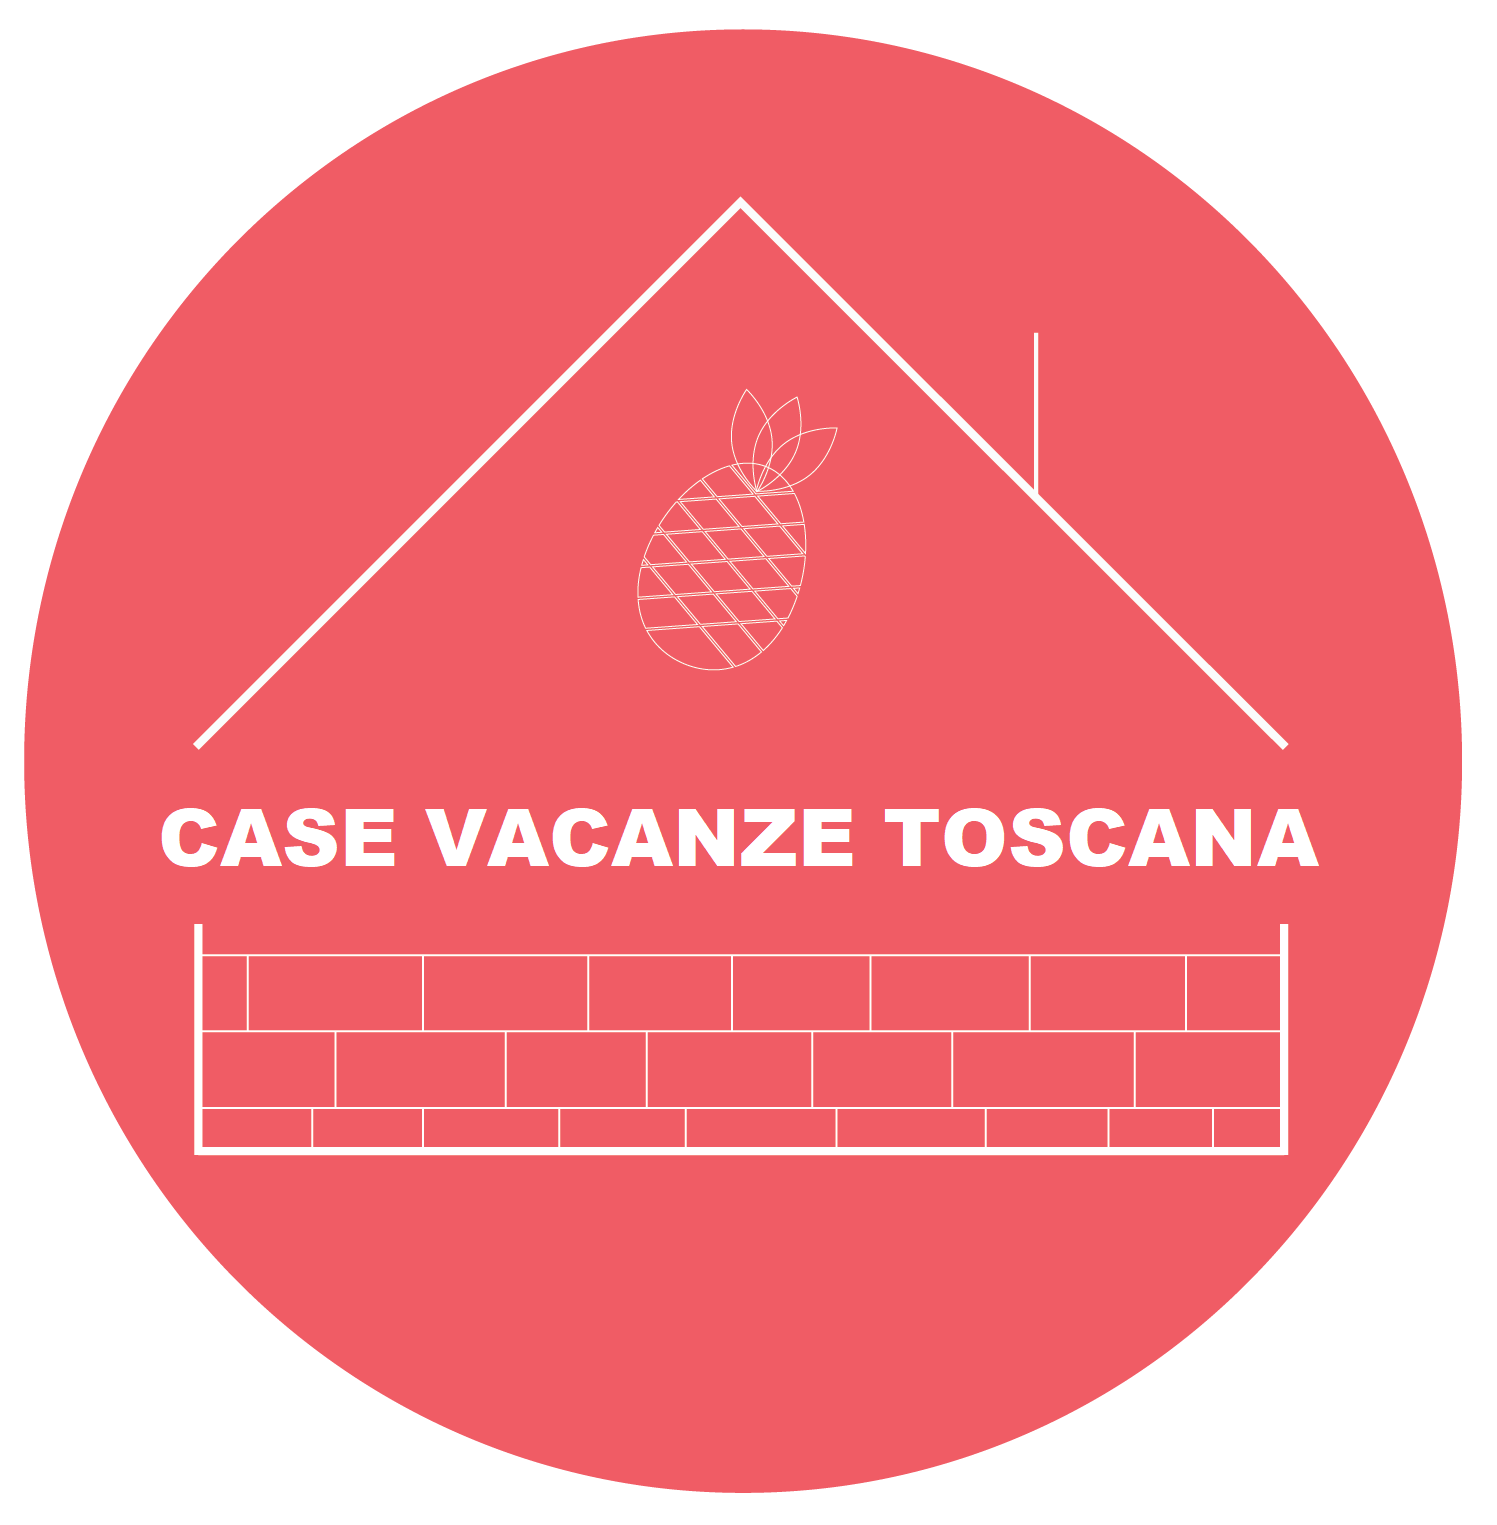 CASE VACANZE TOSCANA